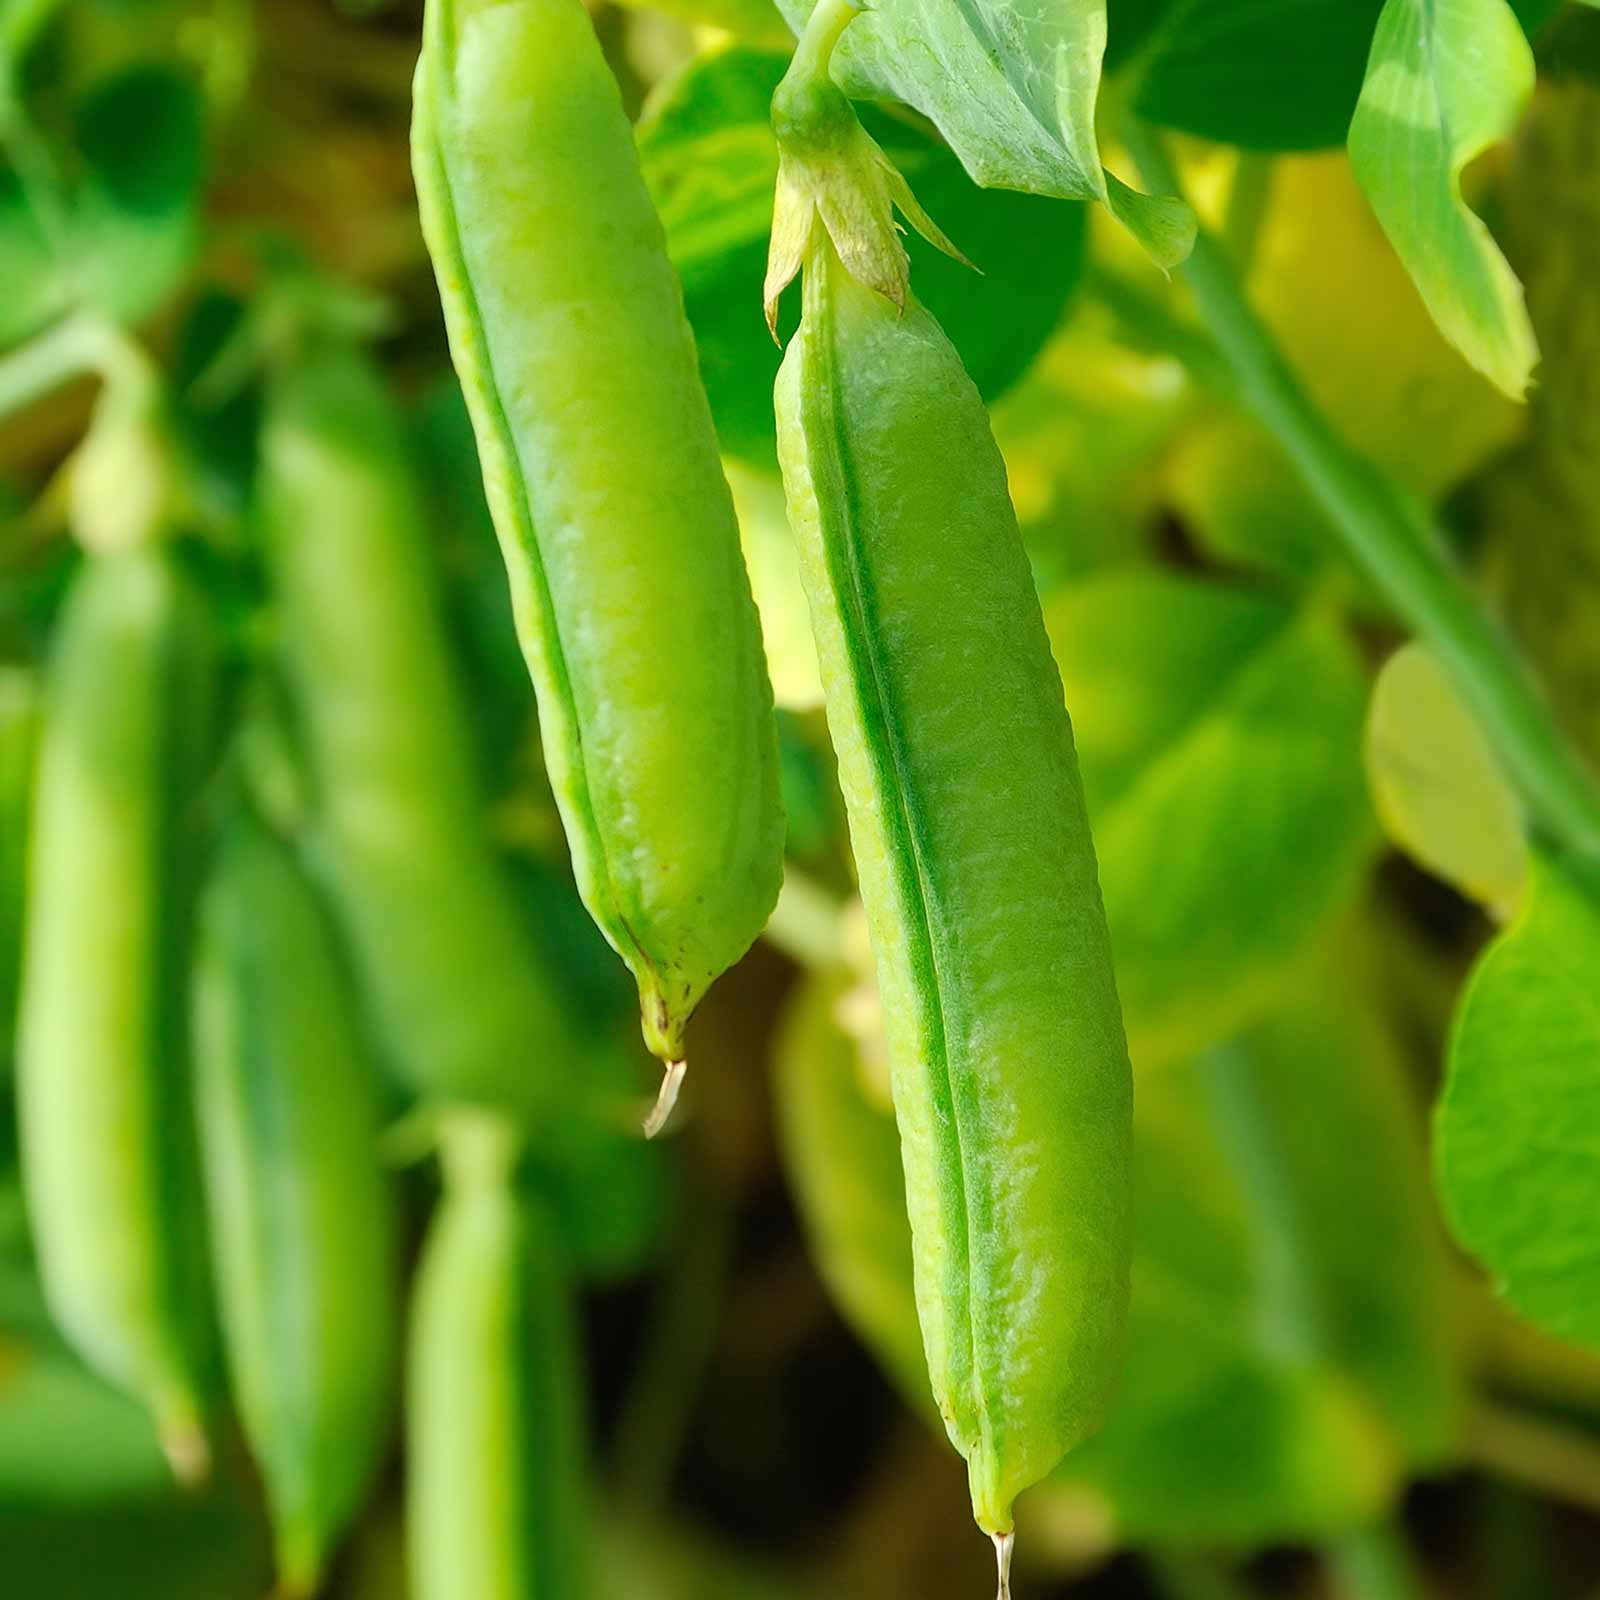 Sugar Snap Pea Garden Seeds (Treated) - 25 Lbs Bulk - Non-GMO, Heirloom ...